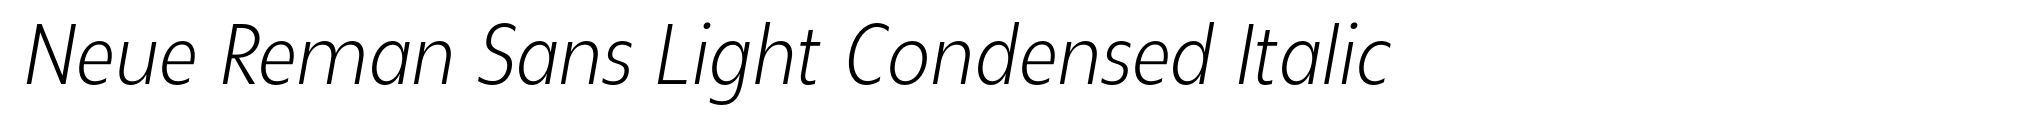 Neue Reman Sans Light Condensed Italic image